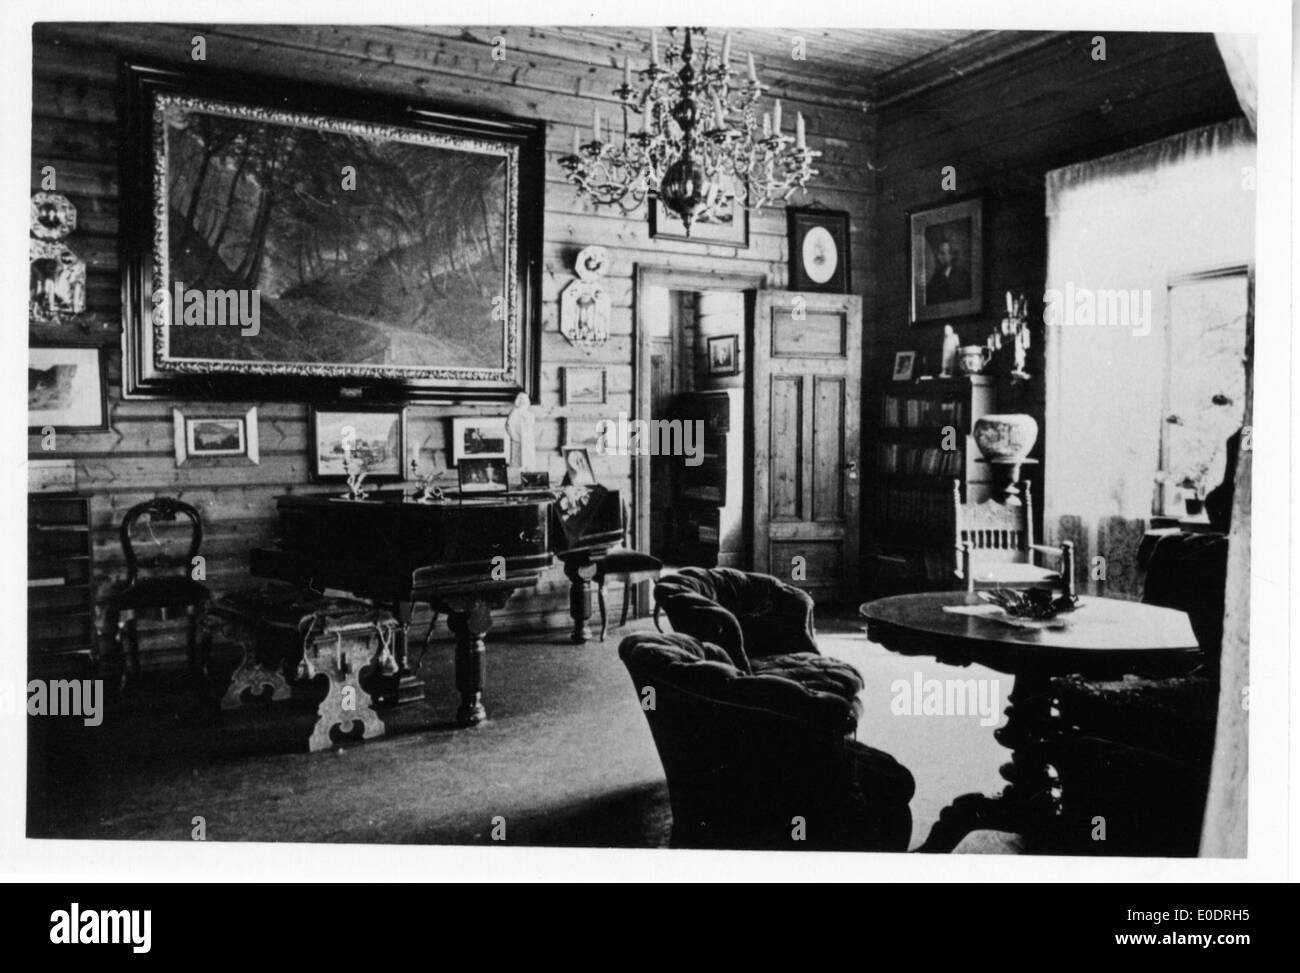 Troldhaugen livingroom Stock Photo